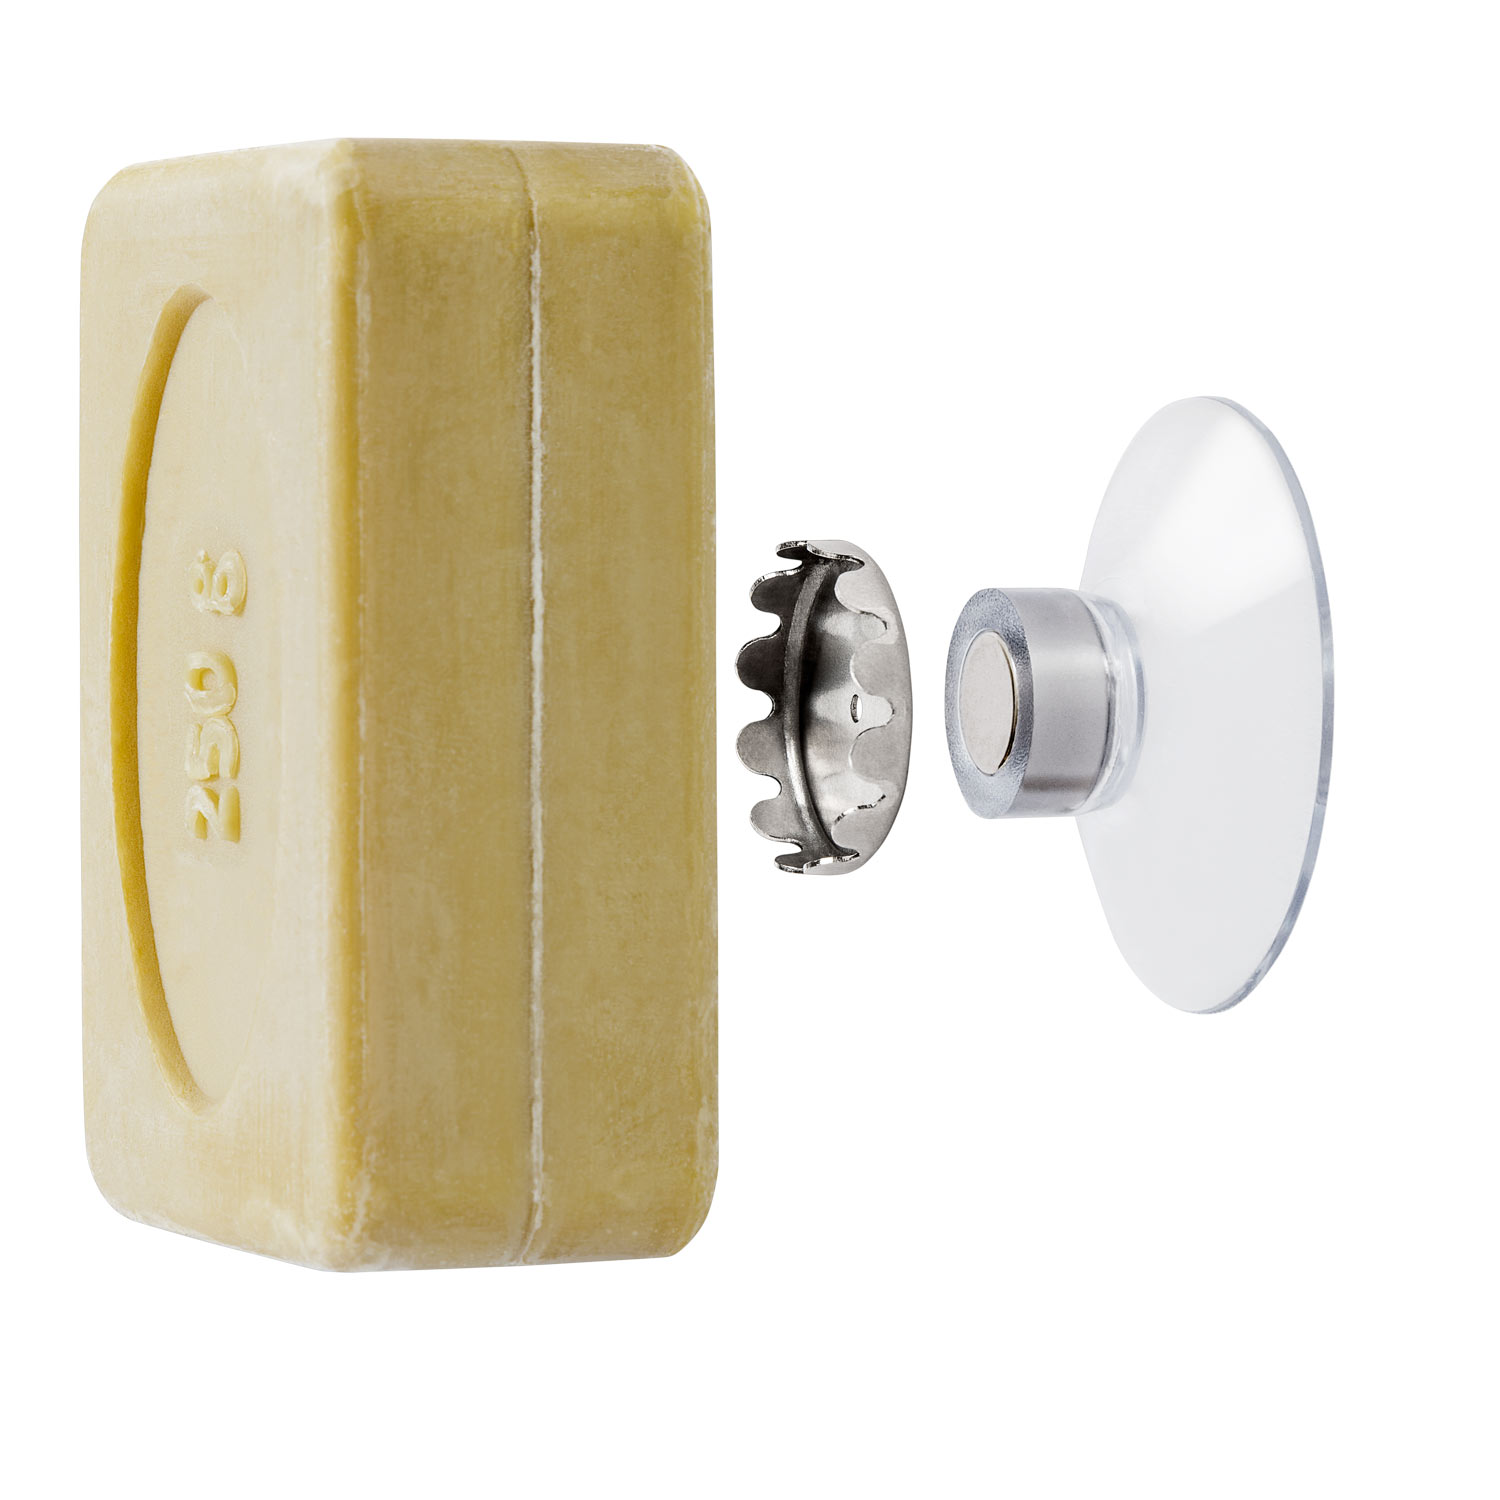 1x Magnetic soap holder Jumbo 250g in eco blister